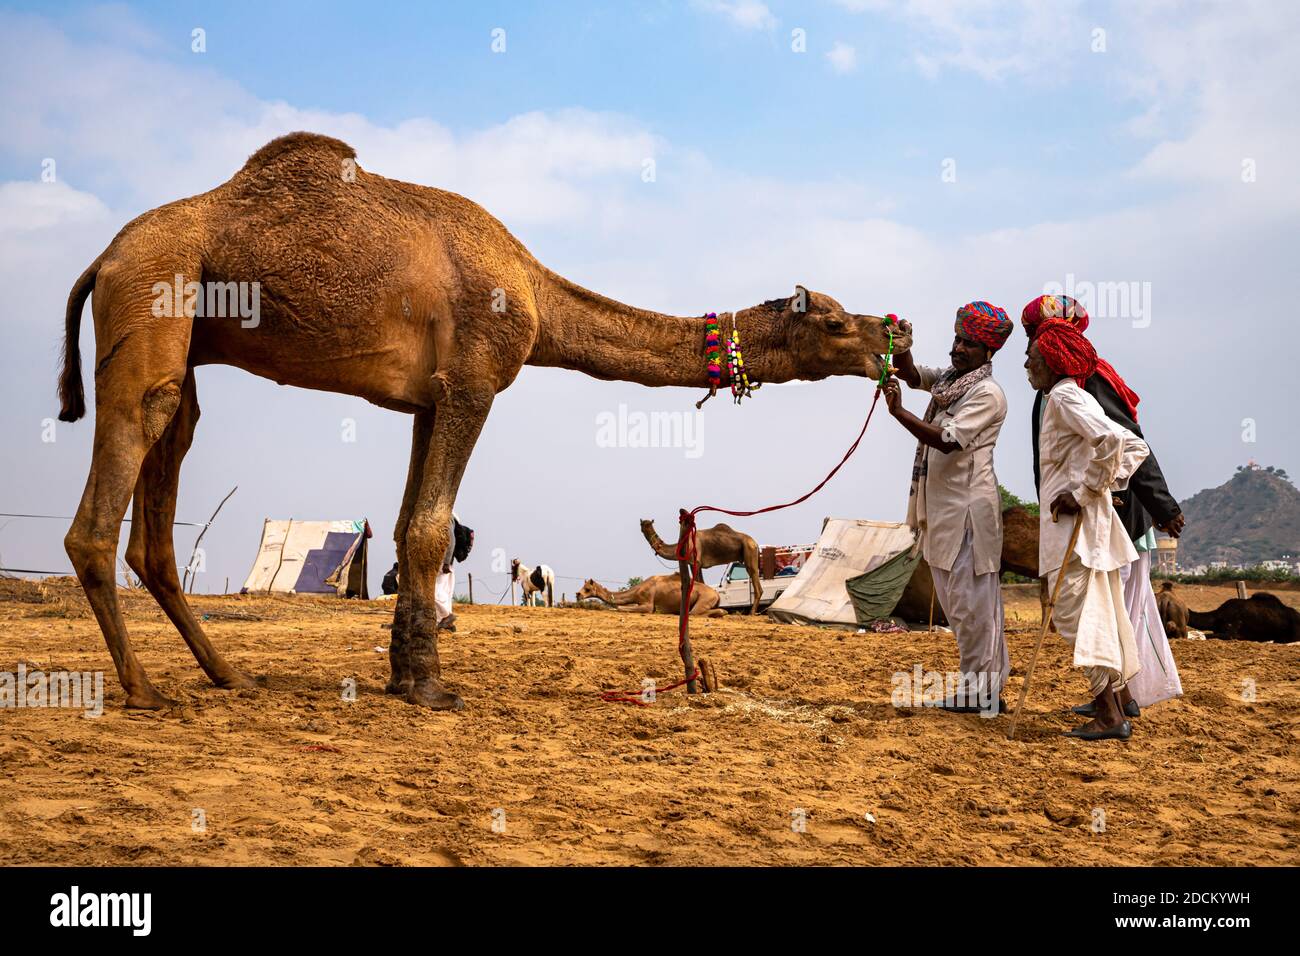 Kamelhändler Kontrolle der Zähne in Vieh Kamel in Sanddünen der Wüste mit selektivem Fokus auf Thema und hinzugefügt Lärm und Getreide. Stockfoto